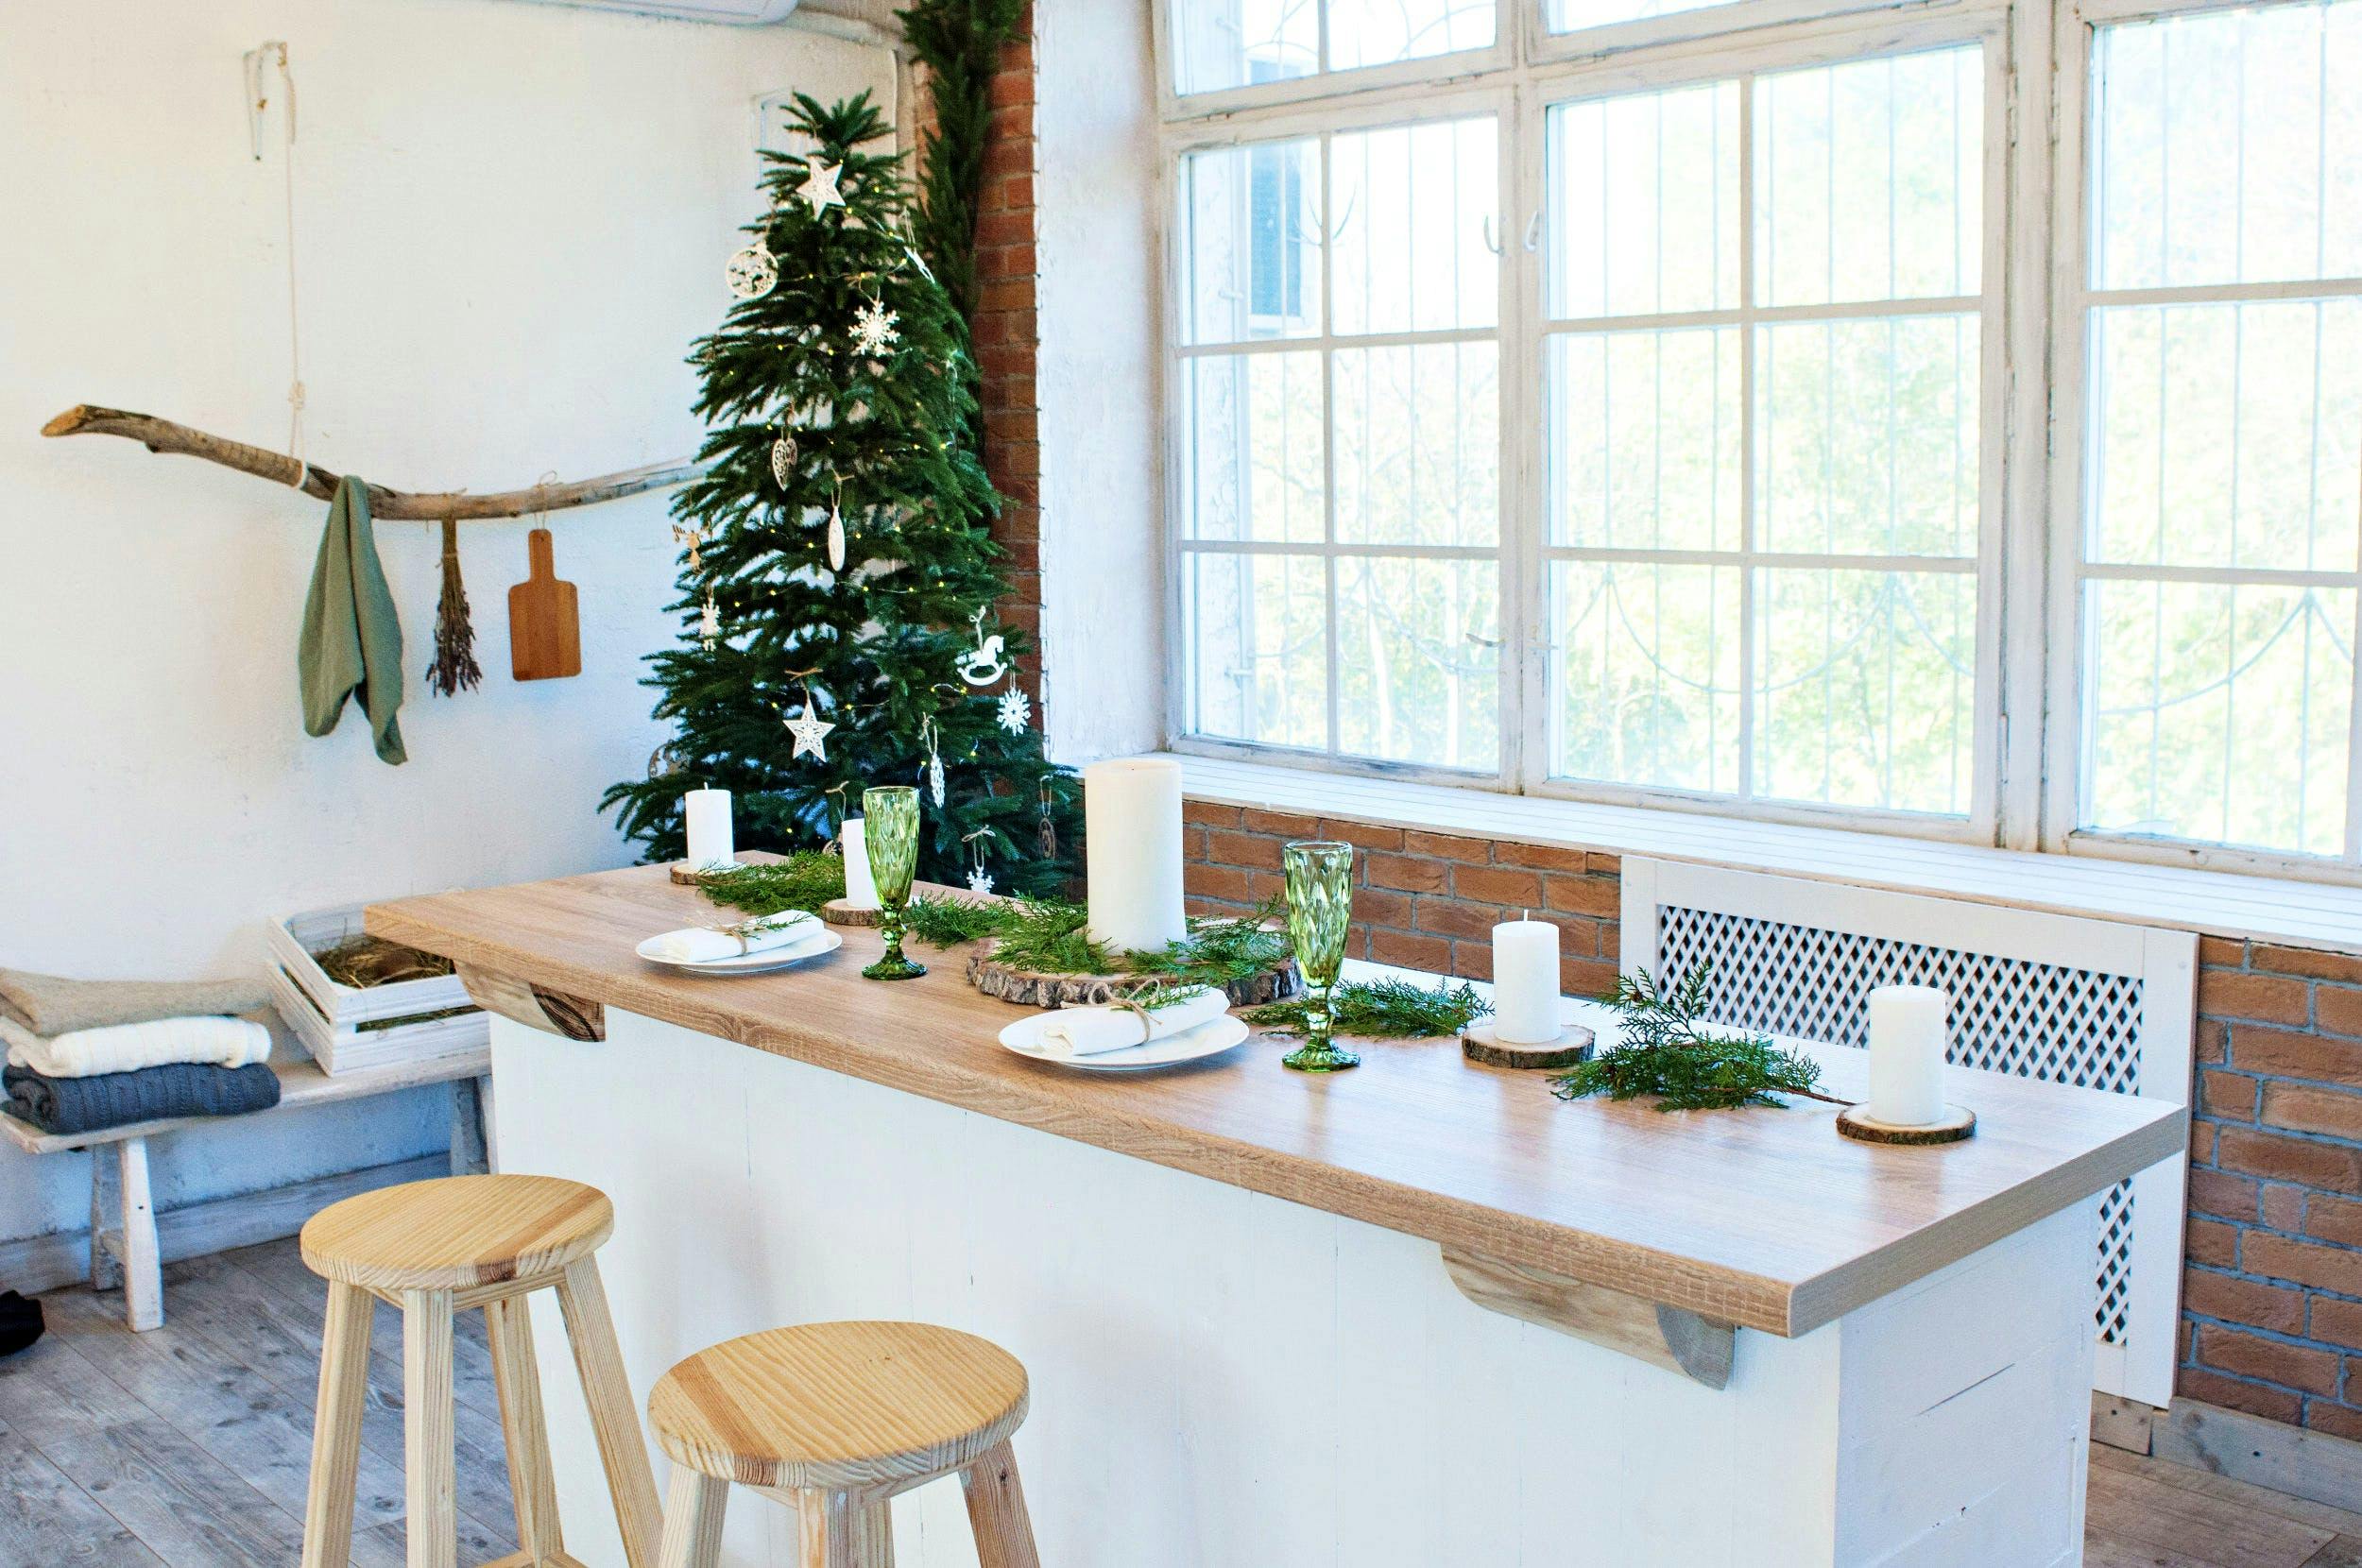 Numéro d'image 32 de la section actuelle de {{The most creative Christmas decoration ideas for your kitchen}} de Cosentino France